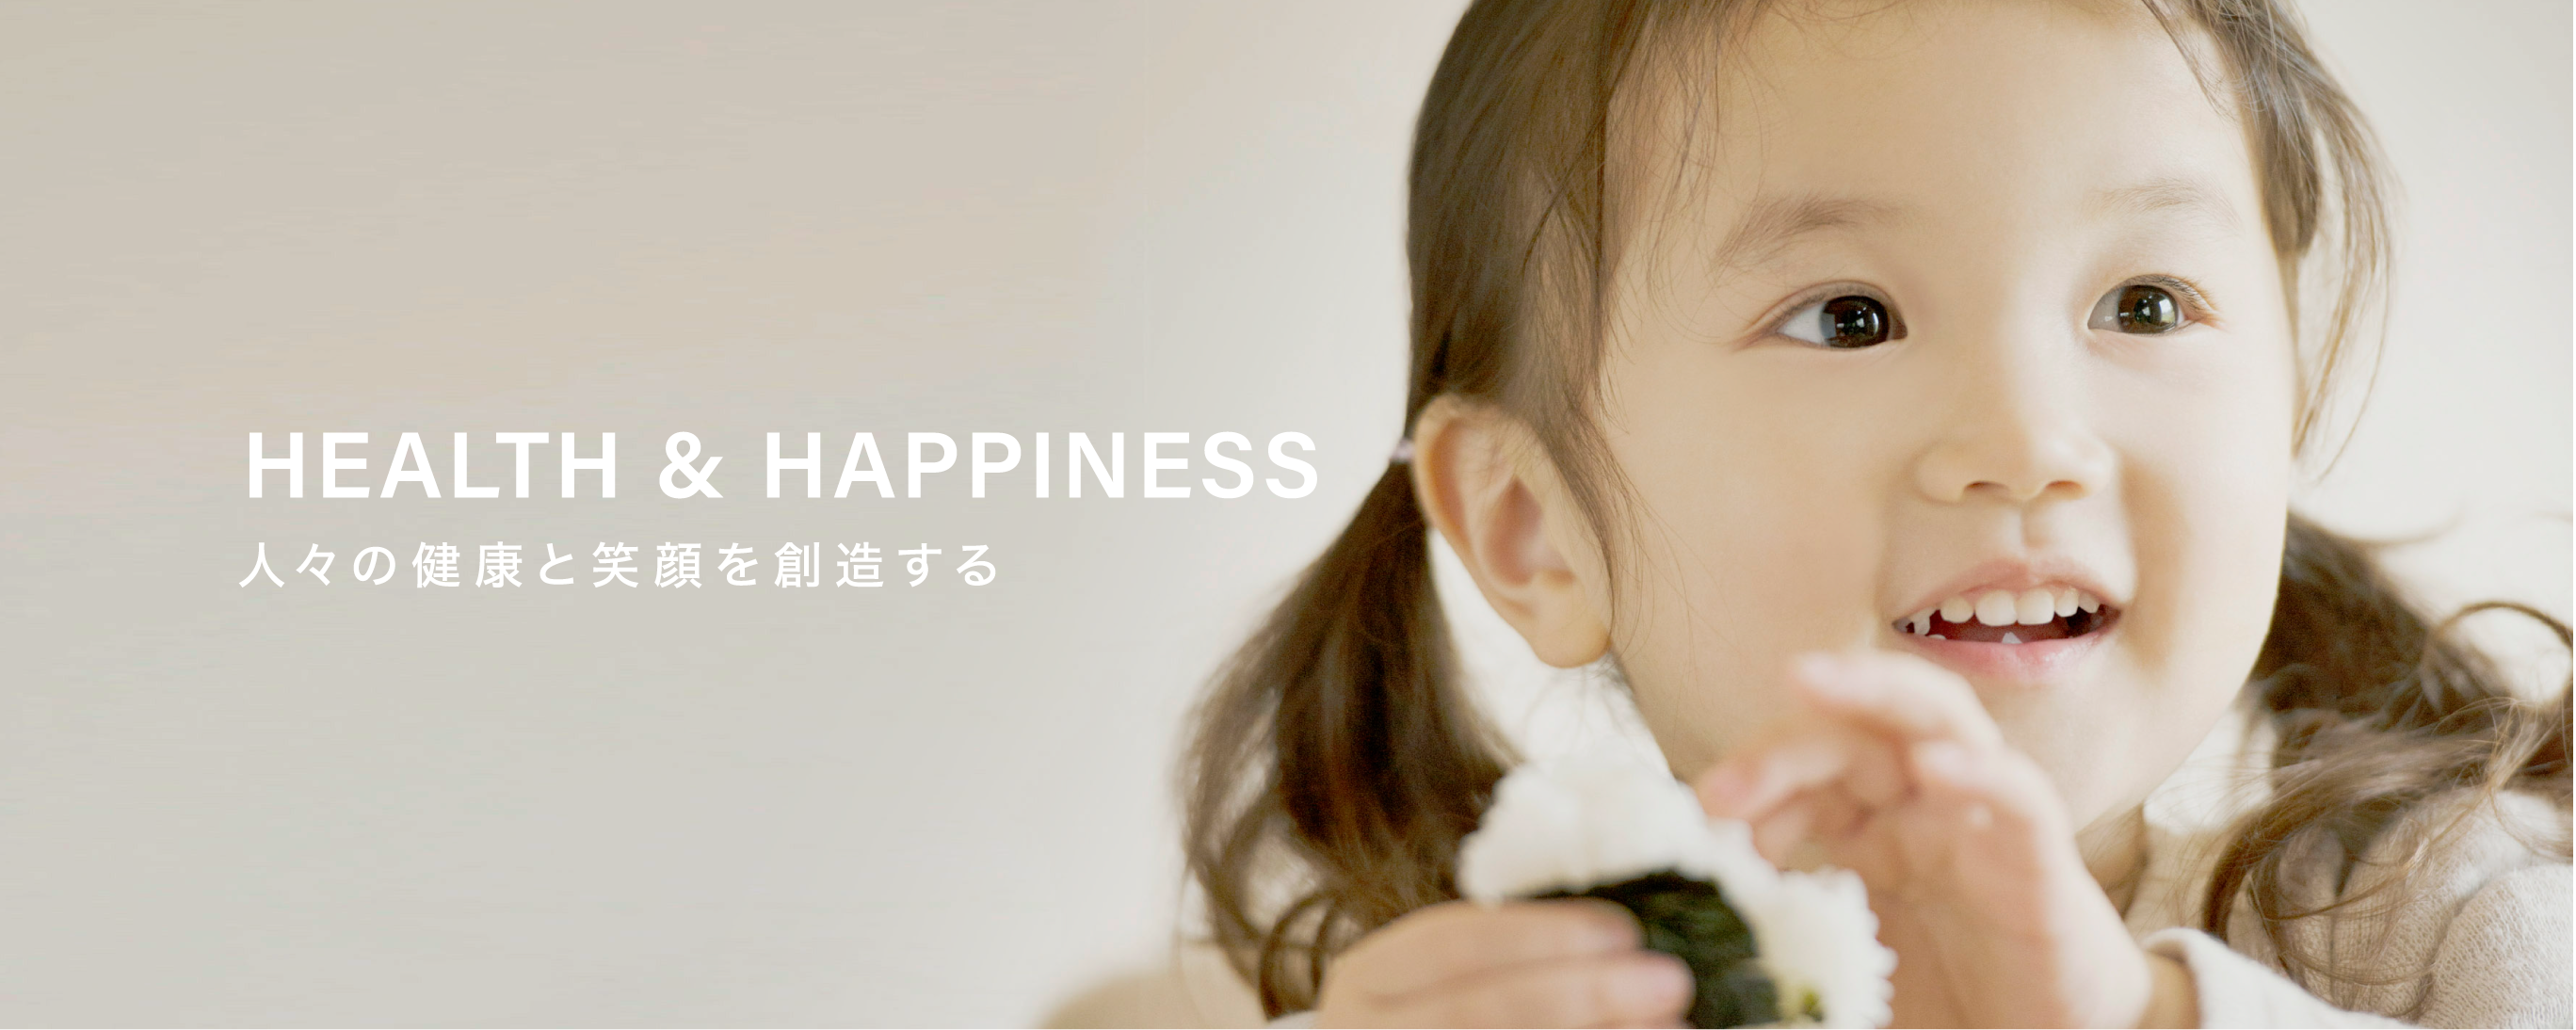 HEALTH & HAPPINESS 人々の健康と笑顔を想像する